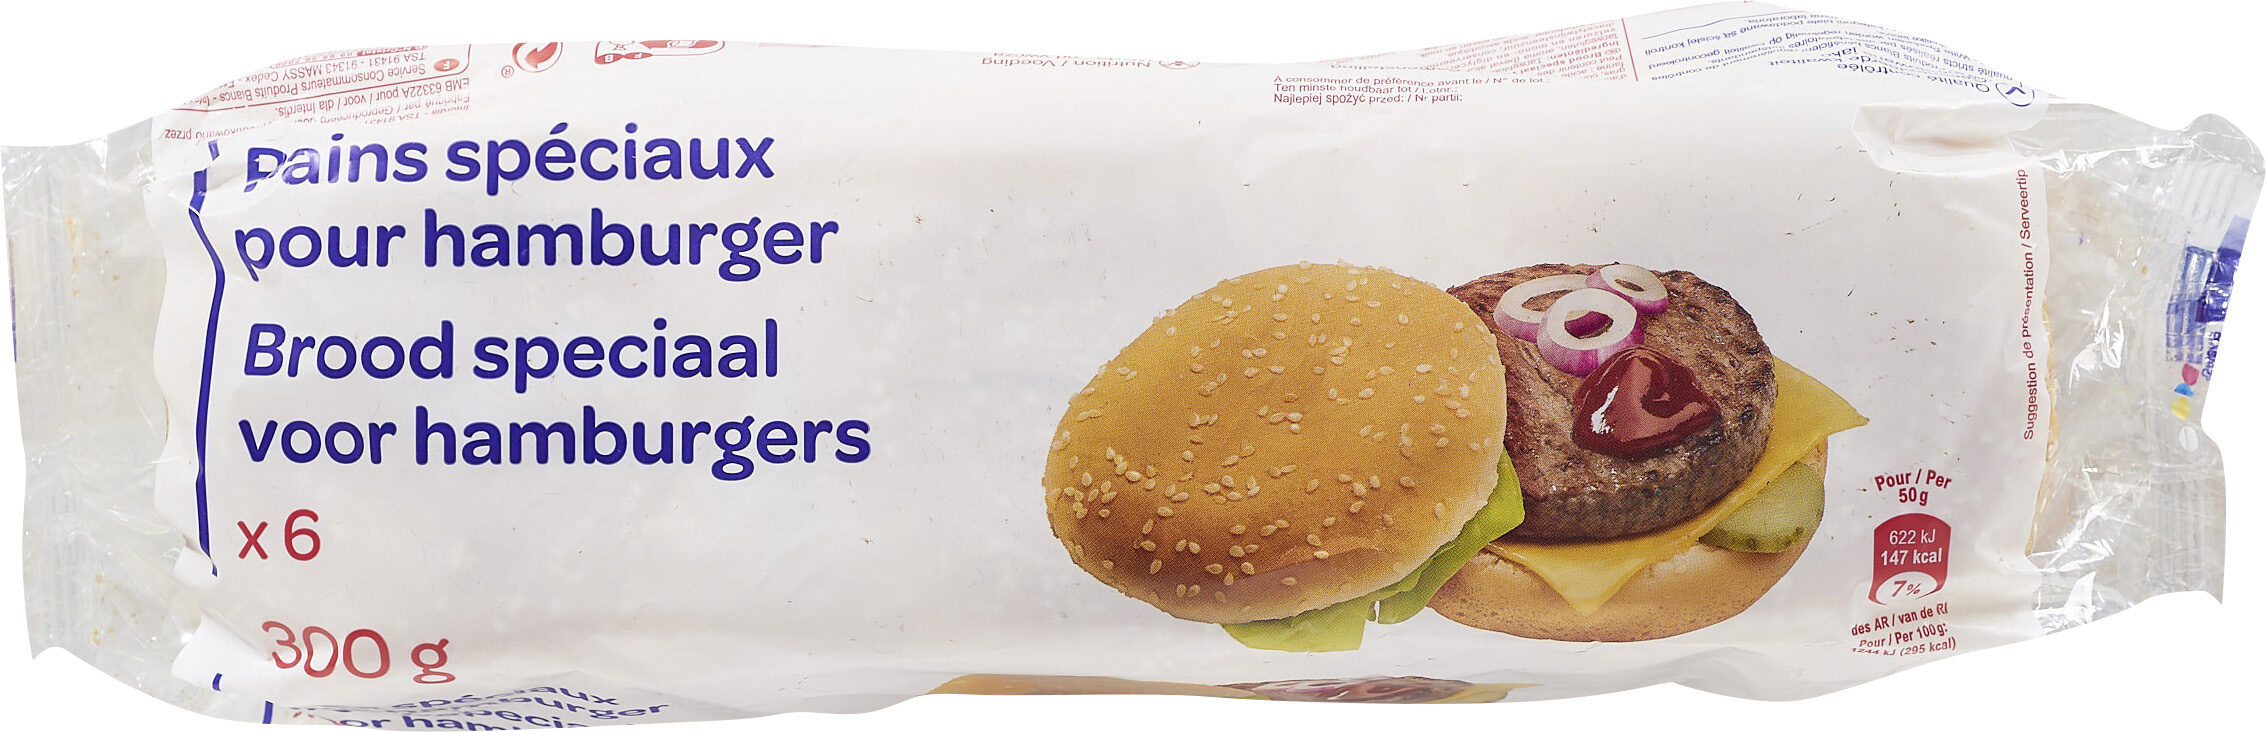 Pains spéciaux pour hamburger - Product - fr